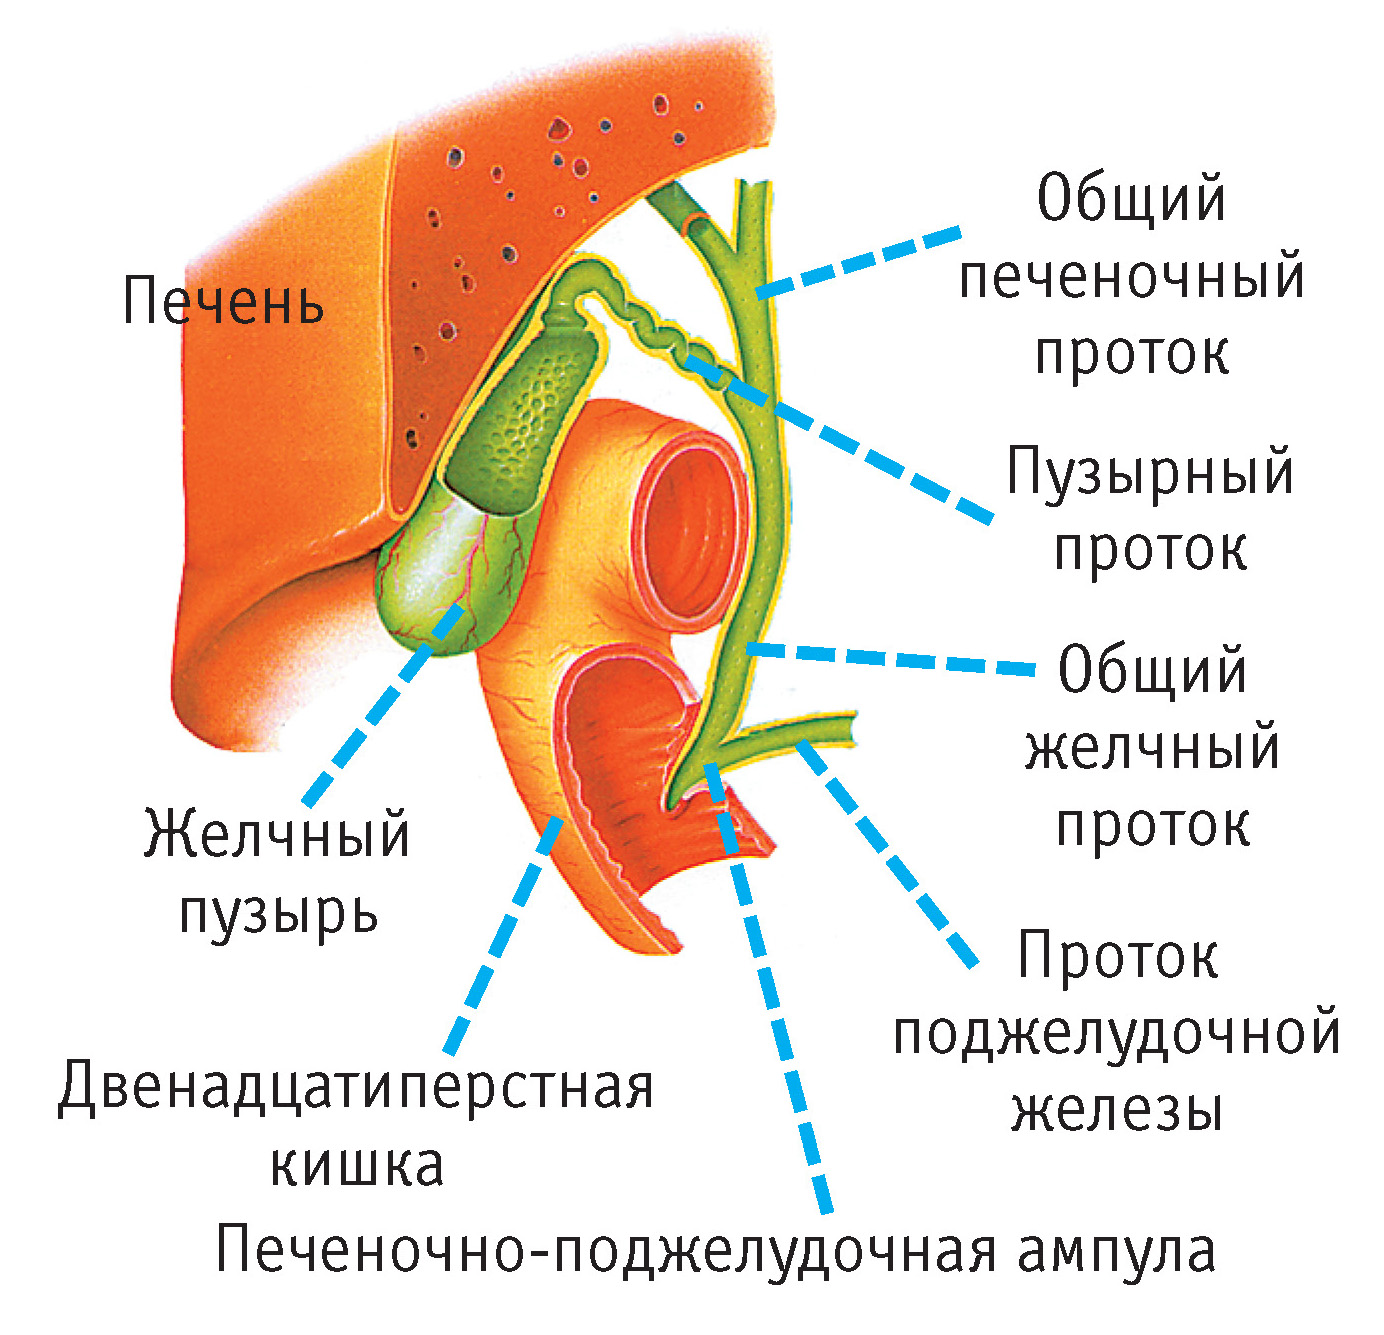 Желчный пузырь имеет. Желчный пузырь анатомия человека пузырный проток. Анатомия печень желчный пузырь протоки. Строение и расположение желчного пузыря. Желчный проток анатомия человека.